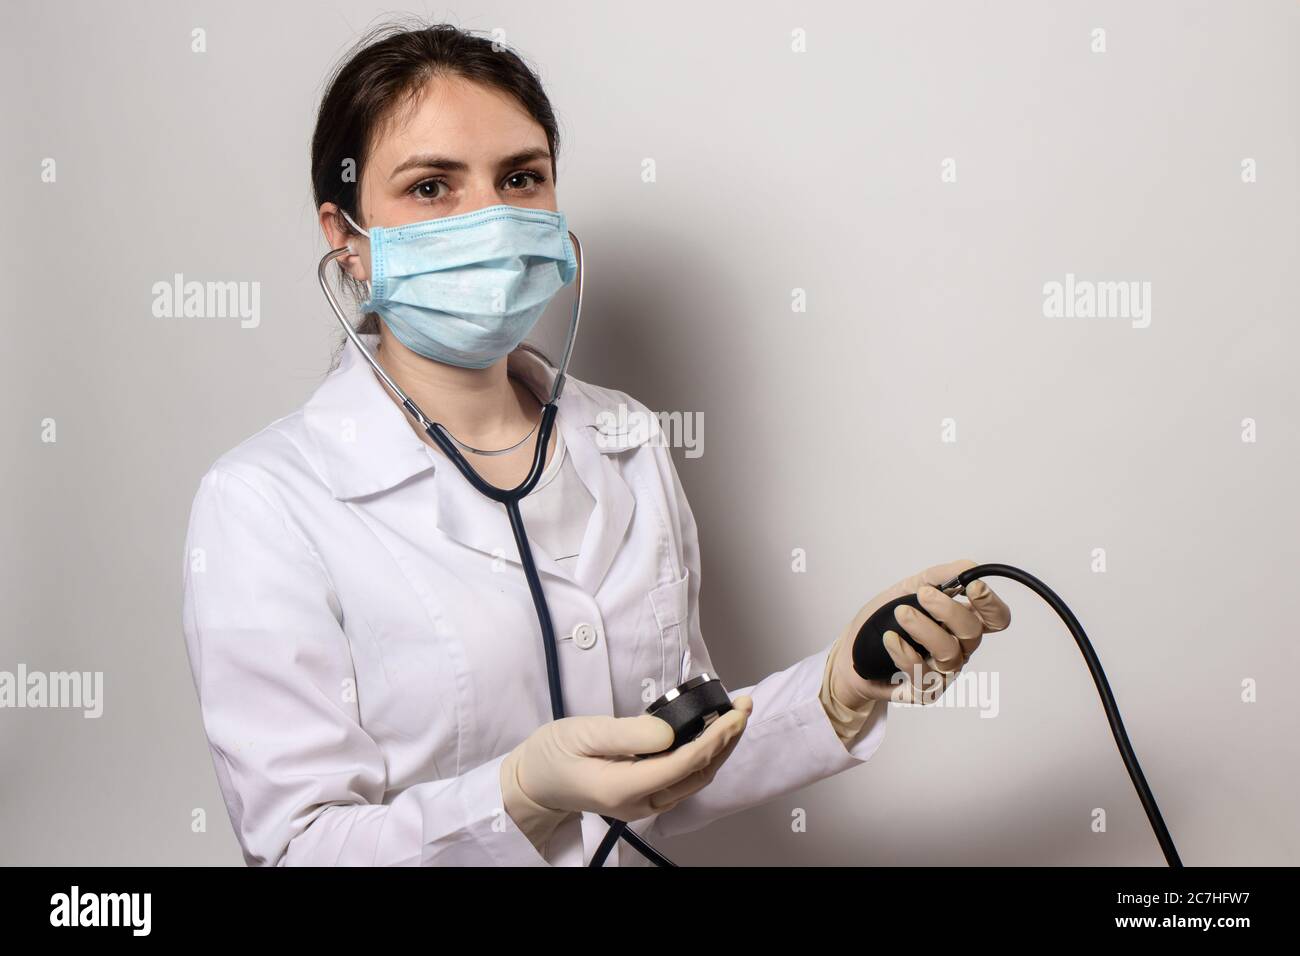 Médecin dans un masque médical, le cardiologue mesure la pression artérielle à l'aide d'un moniteur de tension artérielle. Banque D'Images